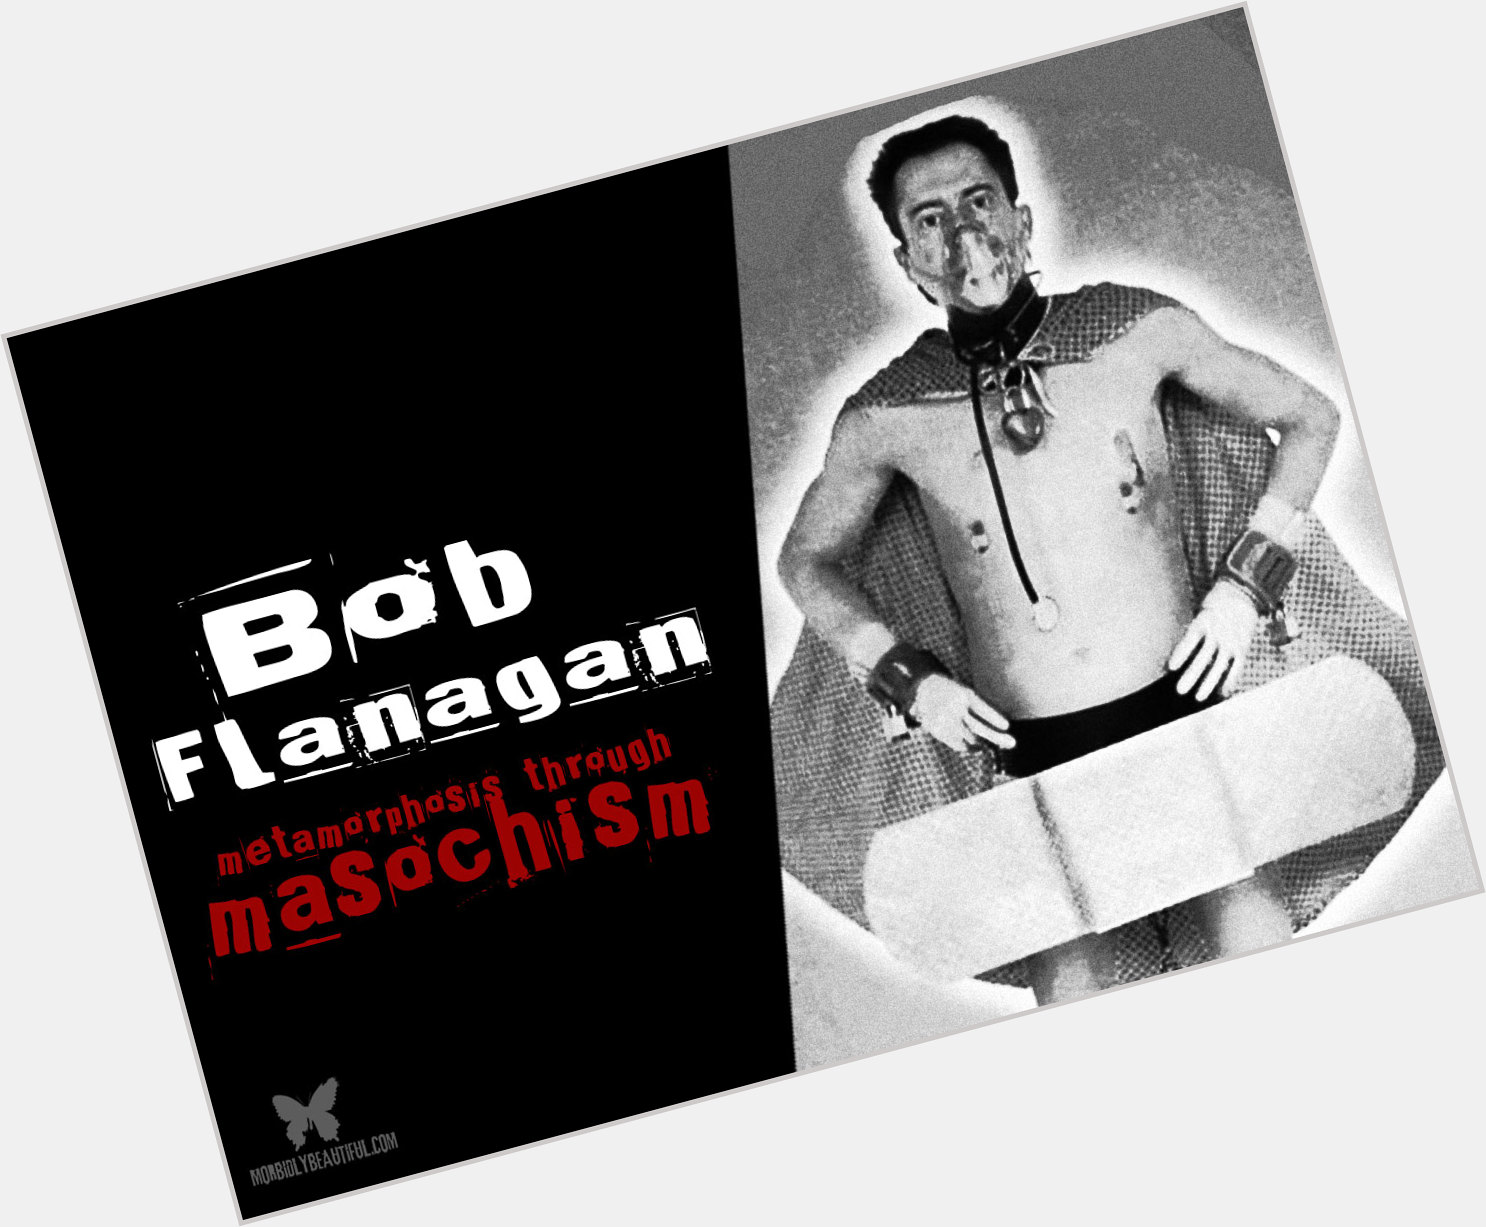 Bob Flanagan where who 3